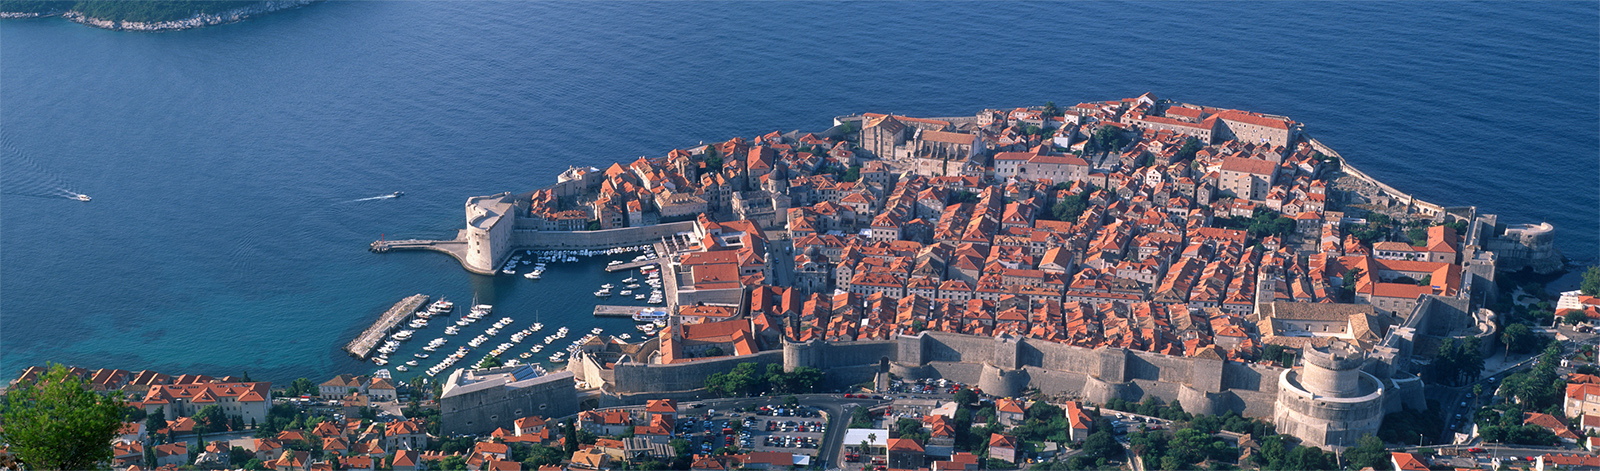 Dubrovnik_SRD_pano_less.jpg